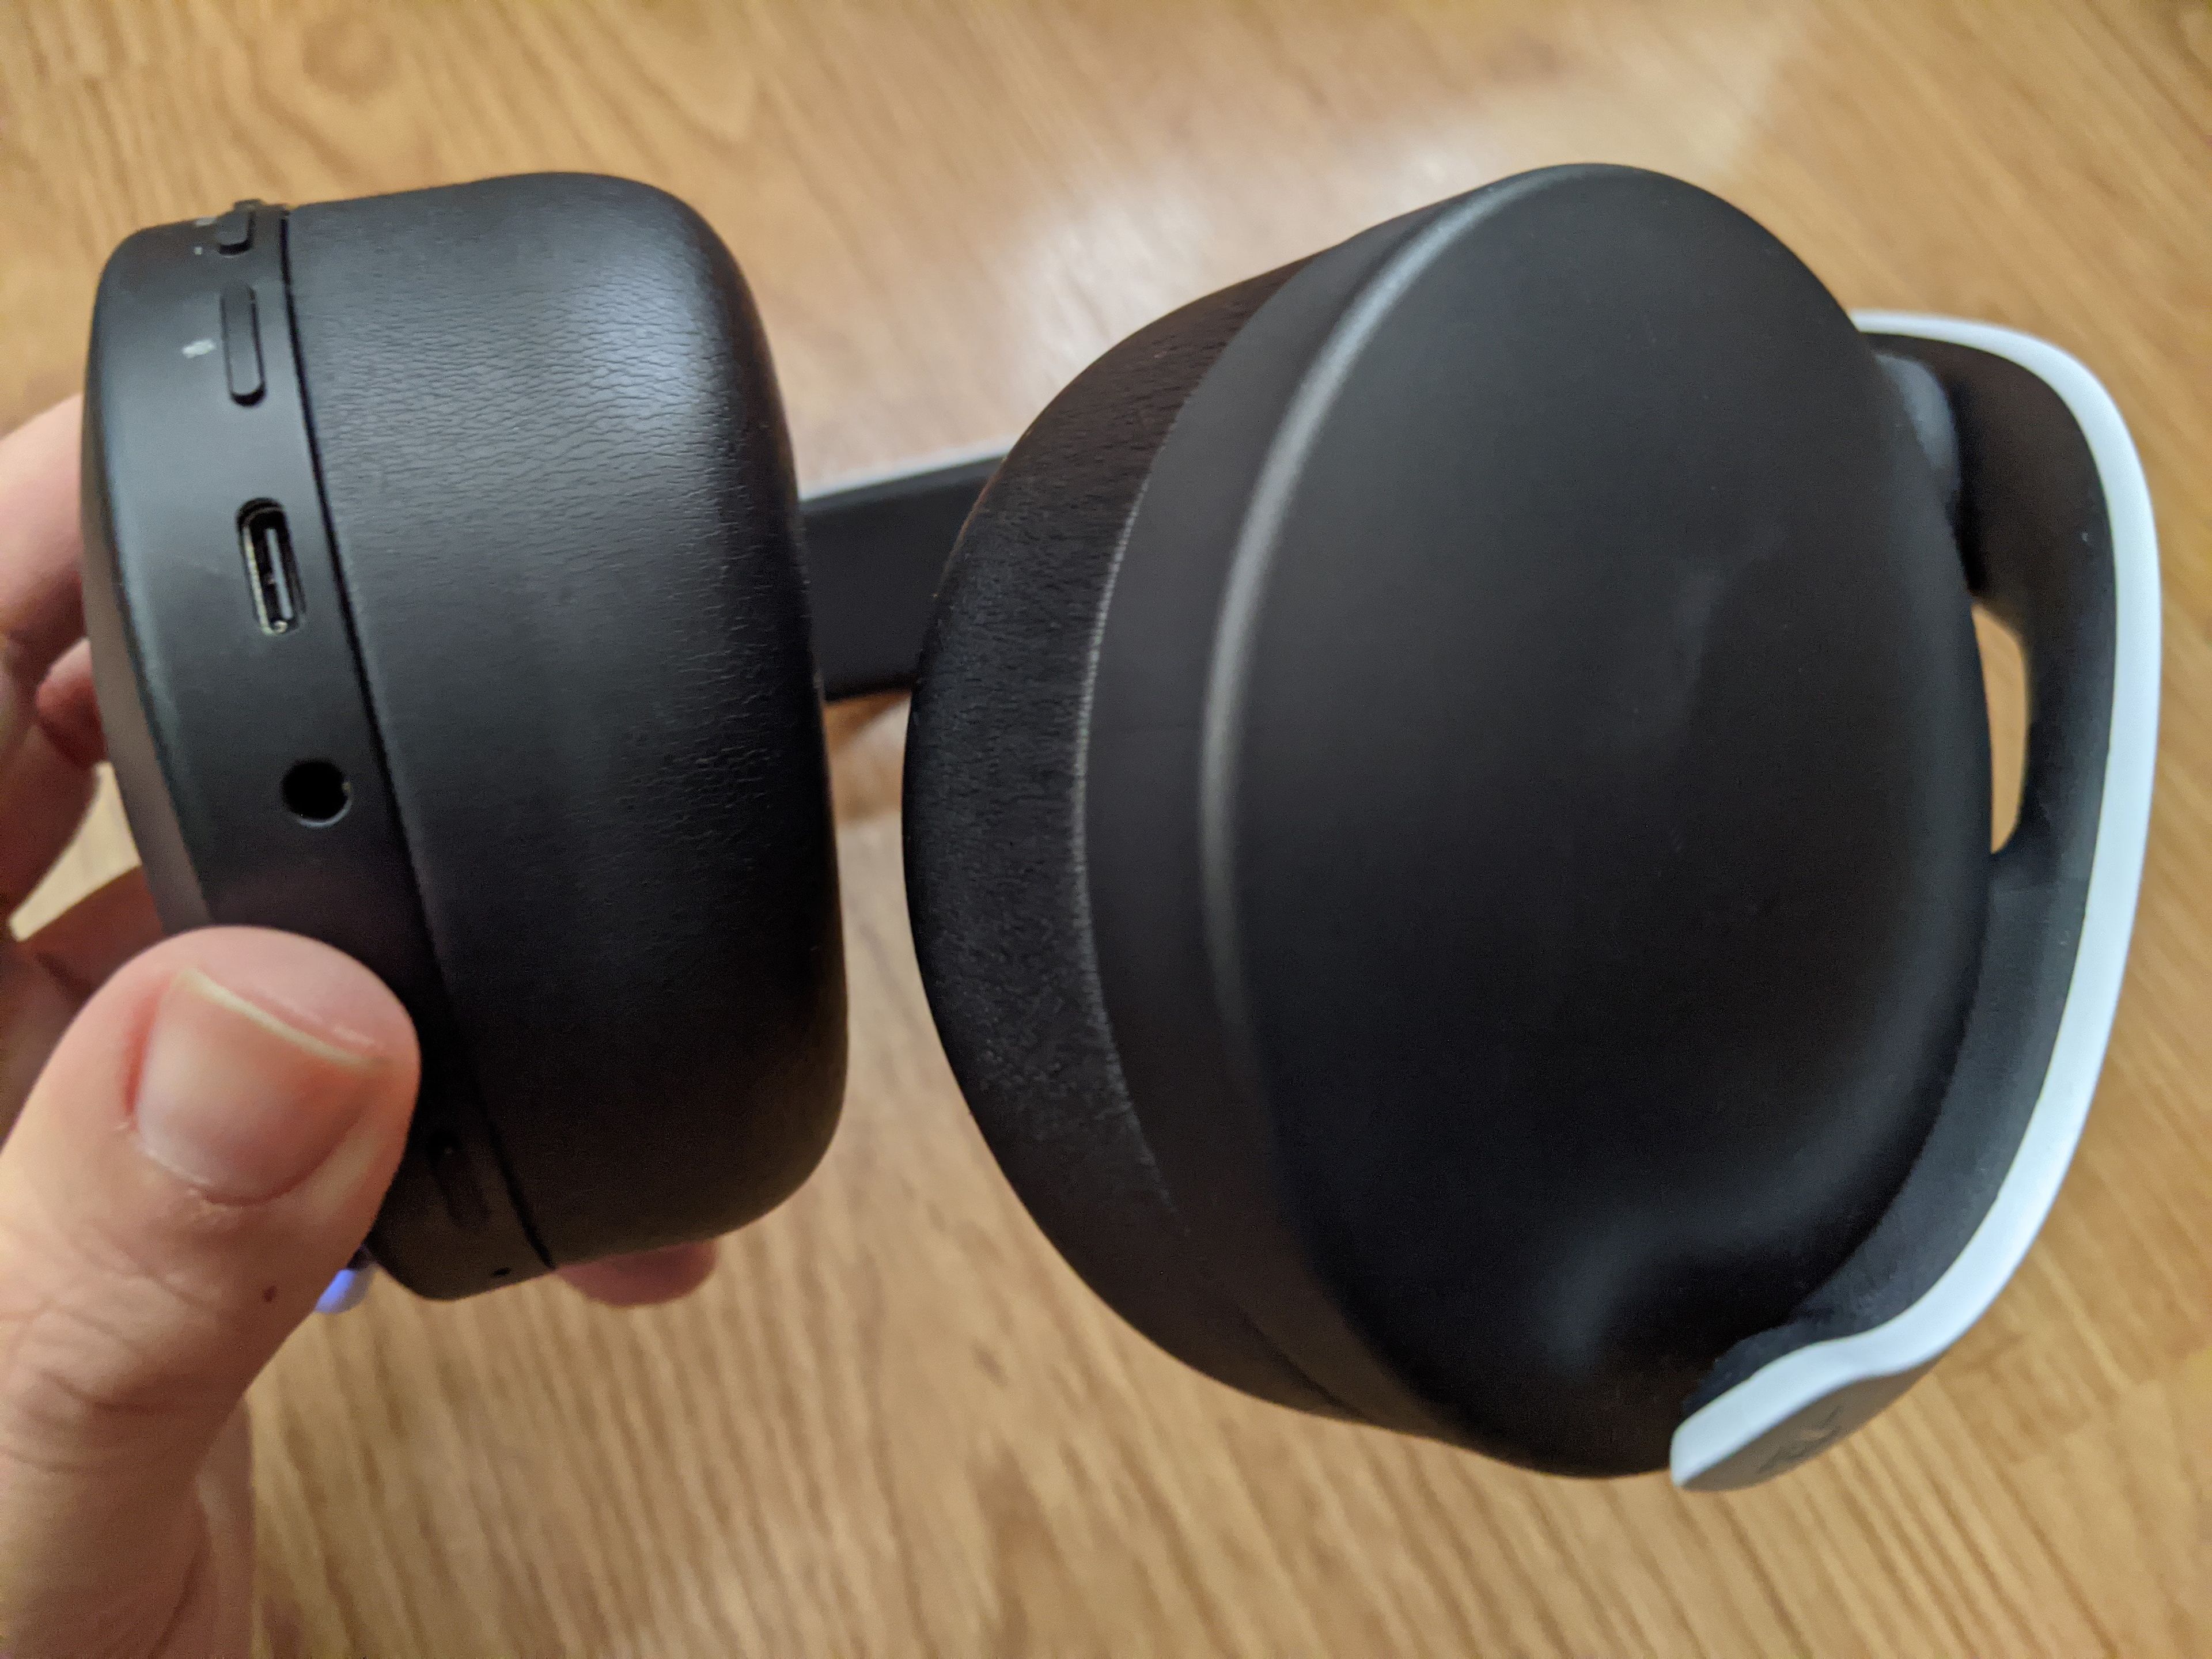 Análisis Pulse 3D PS5: ¿merece la pena el nuevo auricular de Sony?